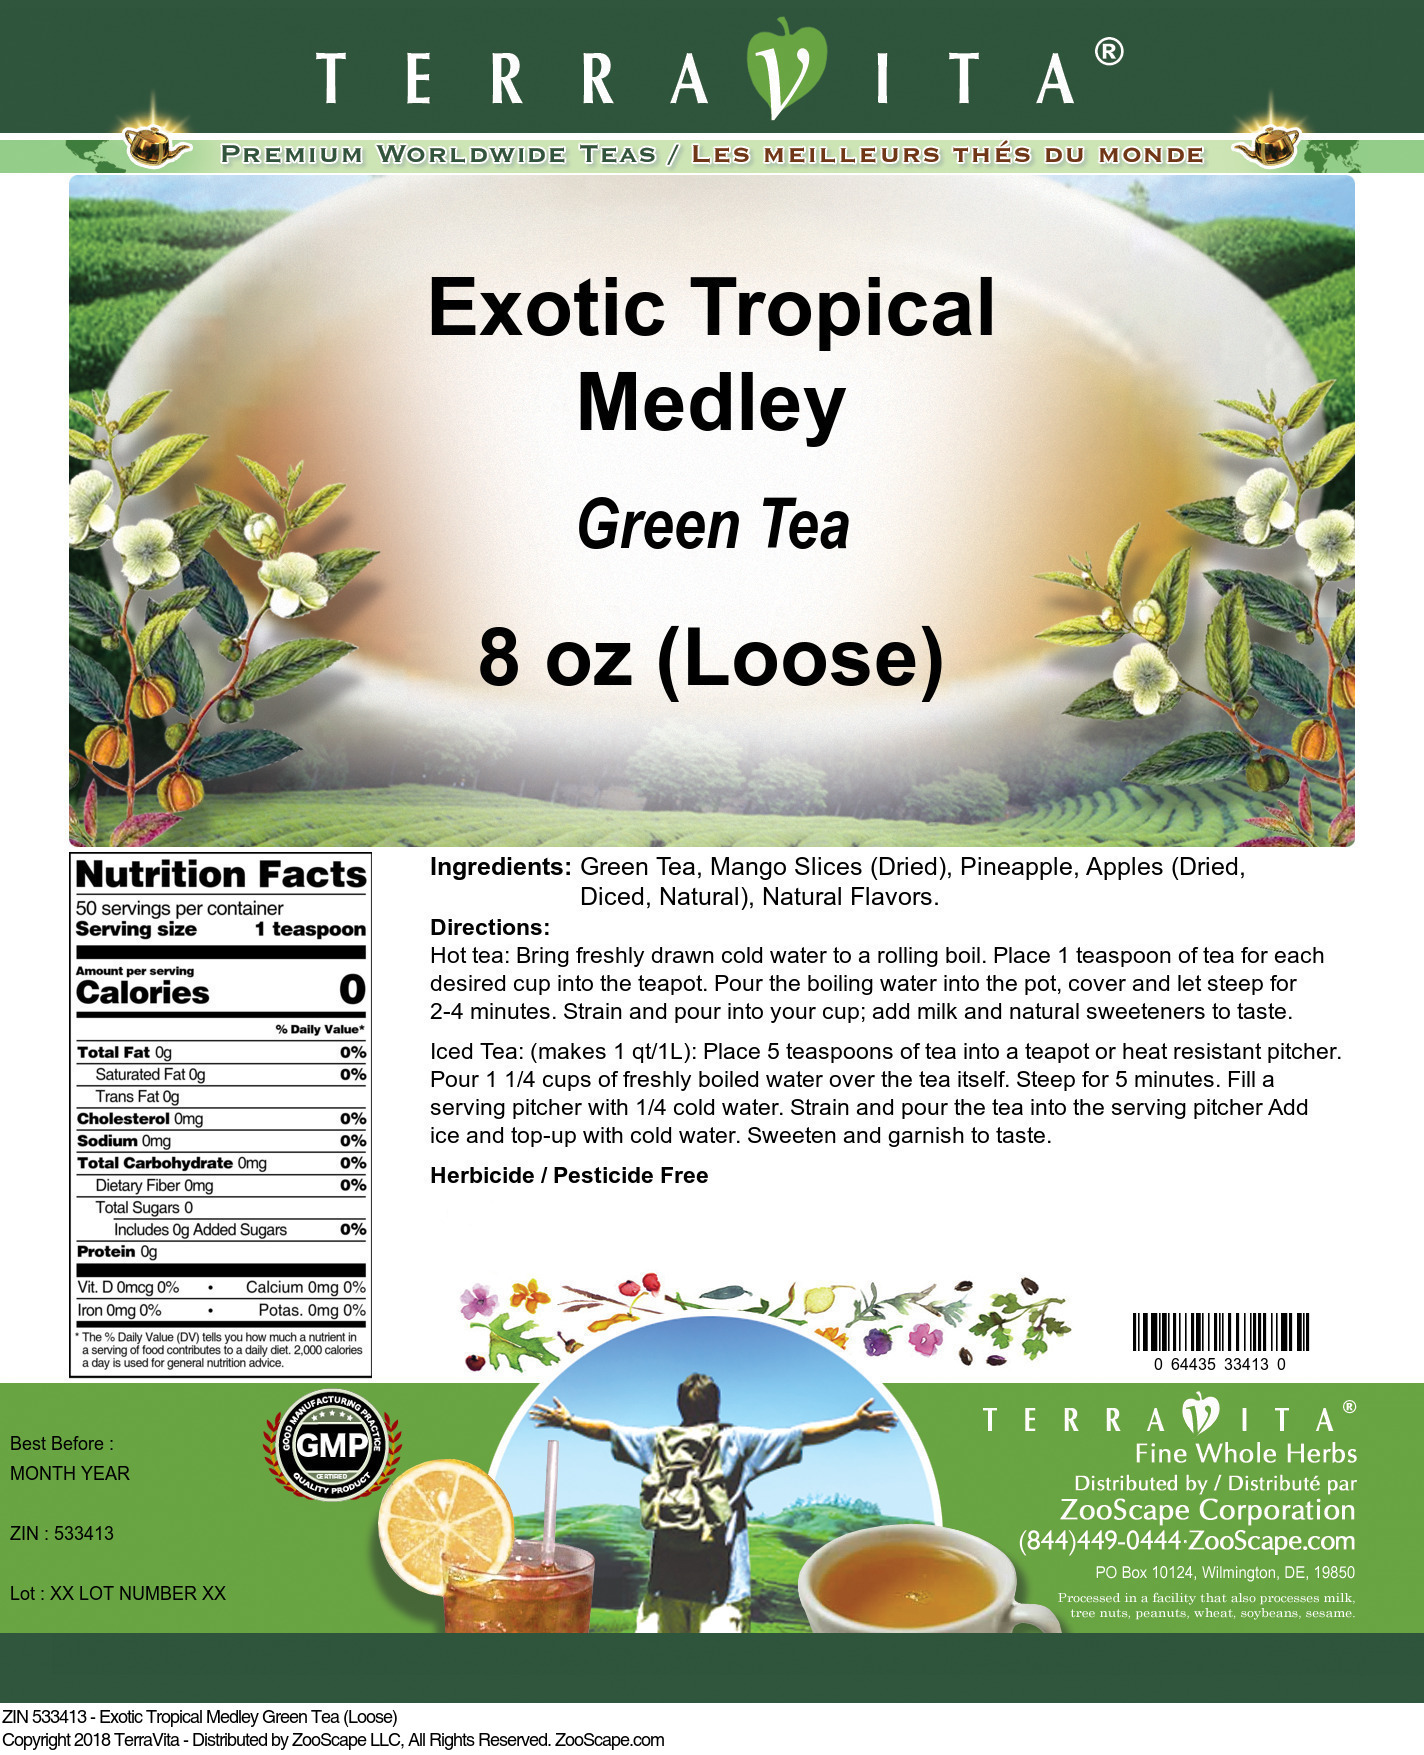 Exotic Tropical Medley Green Tea (Loose) - Label